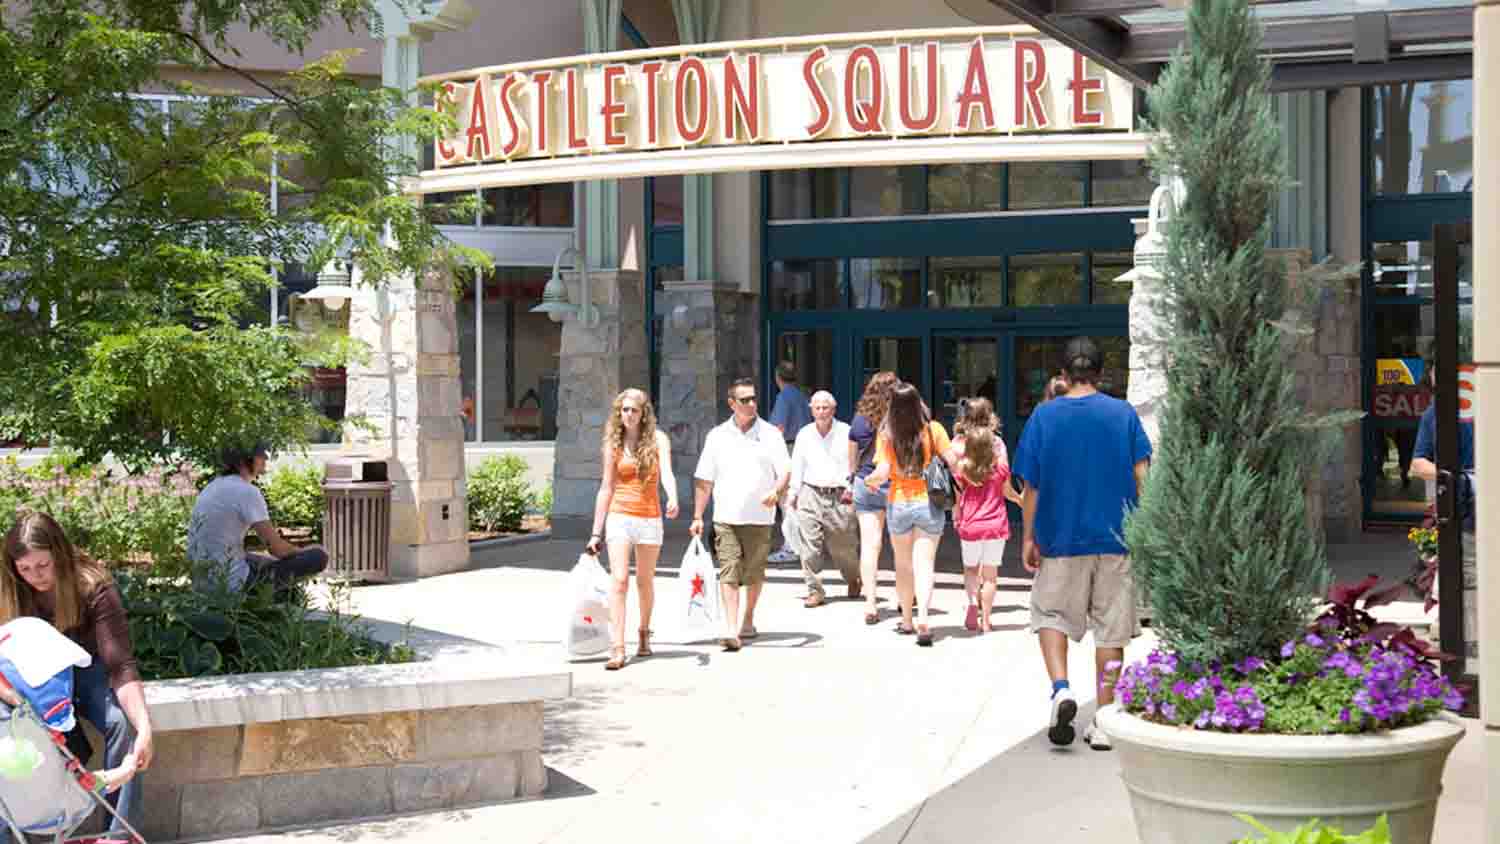 Castleton Square Mall